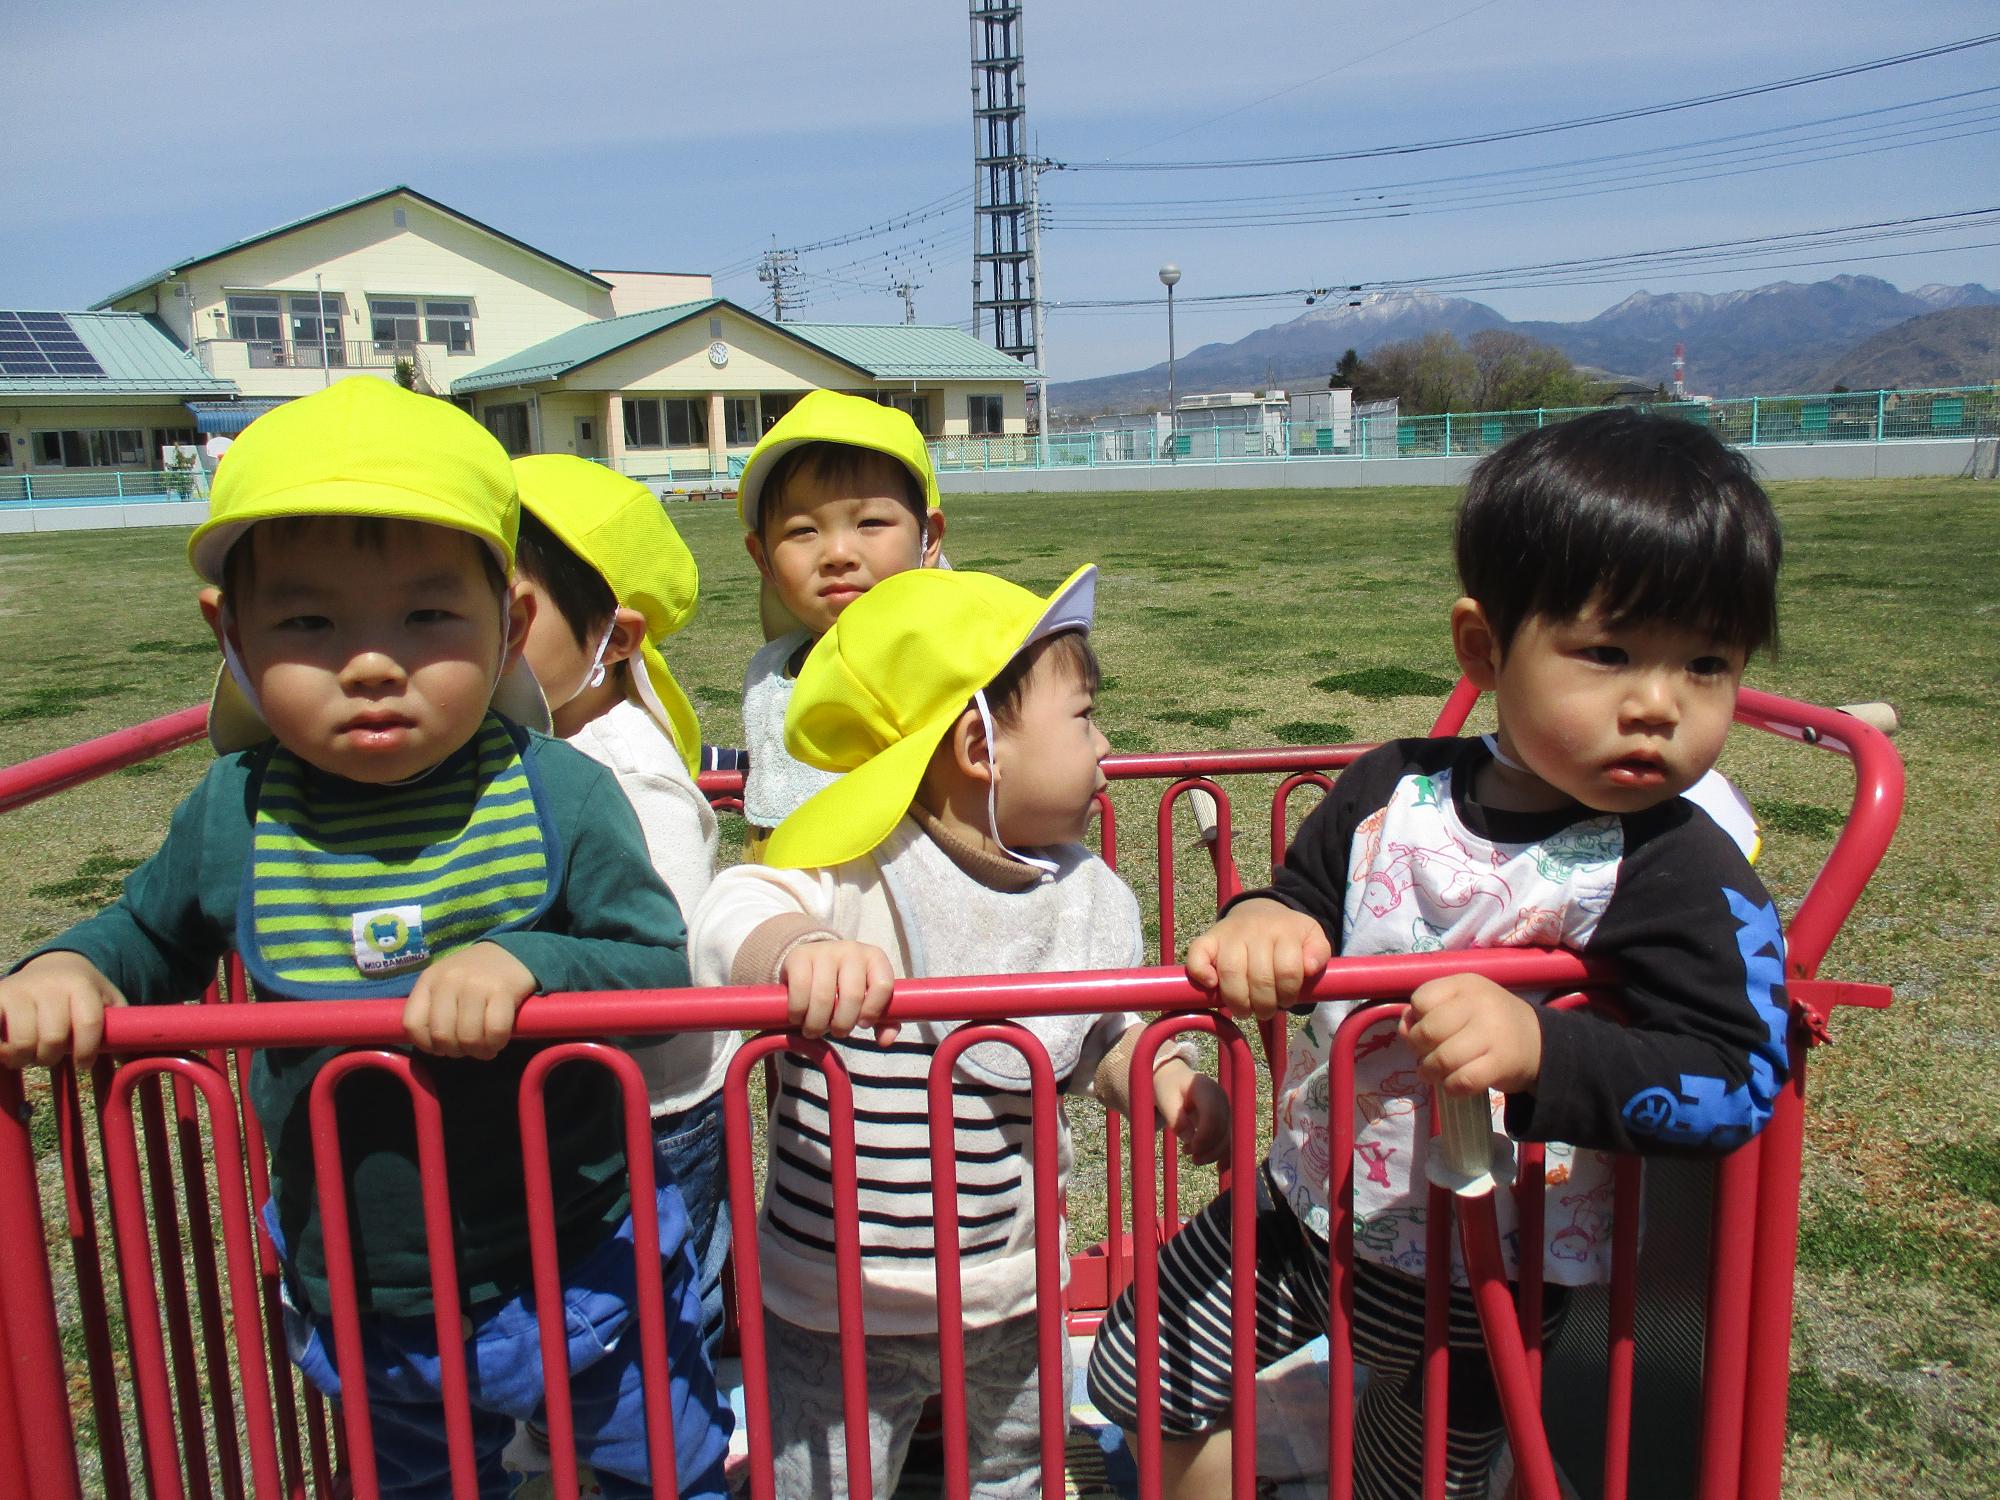 避難者に乗ってお散歩を楽しむつぼみ1組の子供たちです。